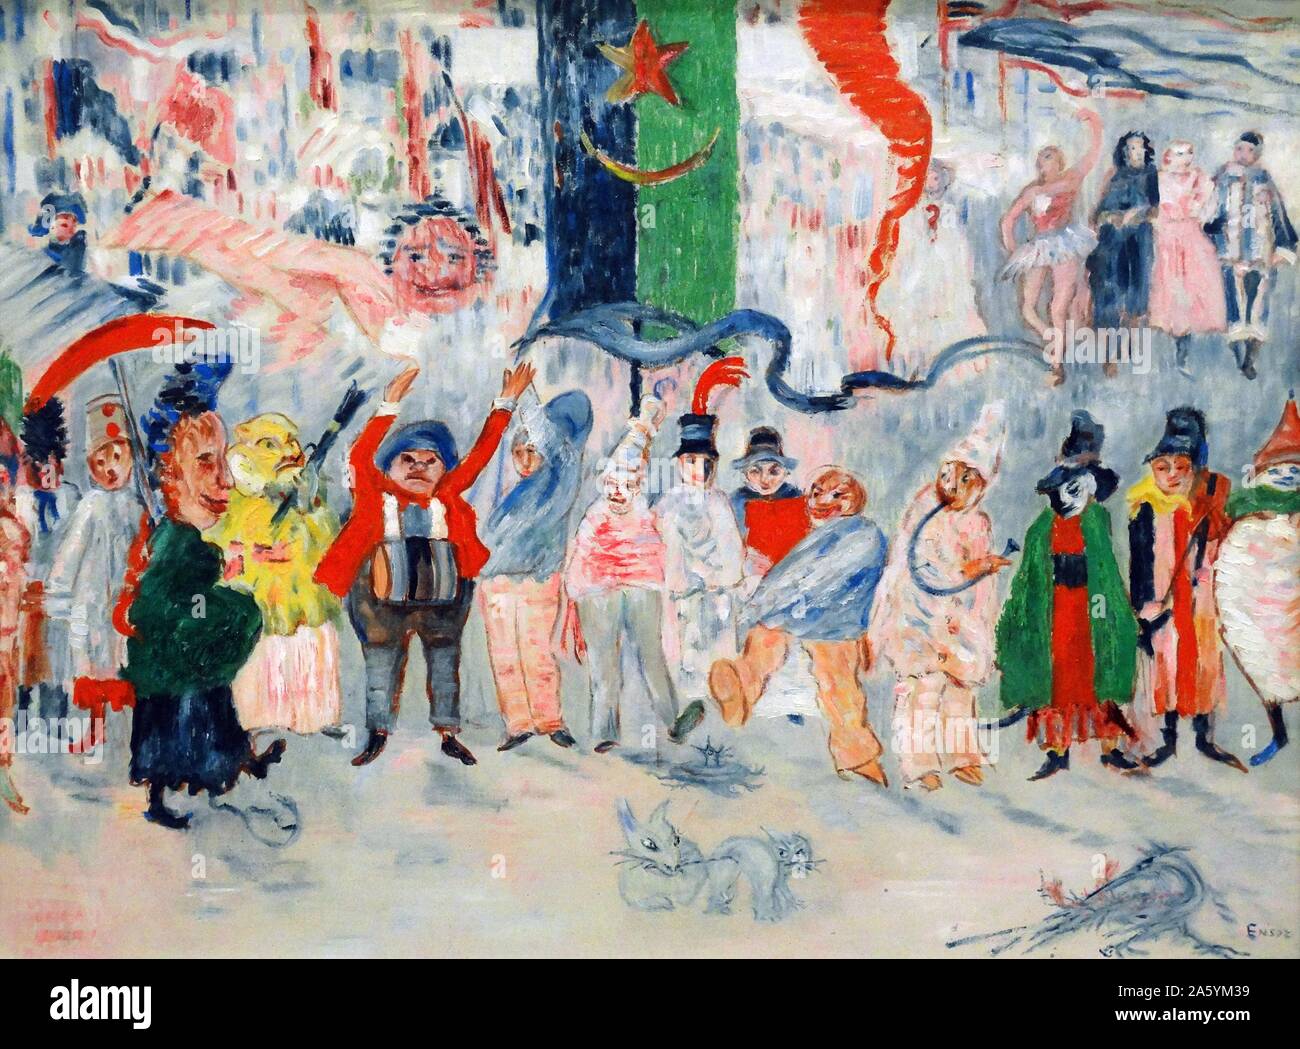 Karneval in Flandern Öl auf Leinwand) von James Ensor (1860-1949) war ein belgischer Maler und Graphiker, einen wichtigen Einfluss auf den Expressionismus und Surrealismus, die in Ostende für fast sein ganzes Leben gelebt. Stockfoto